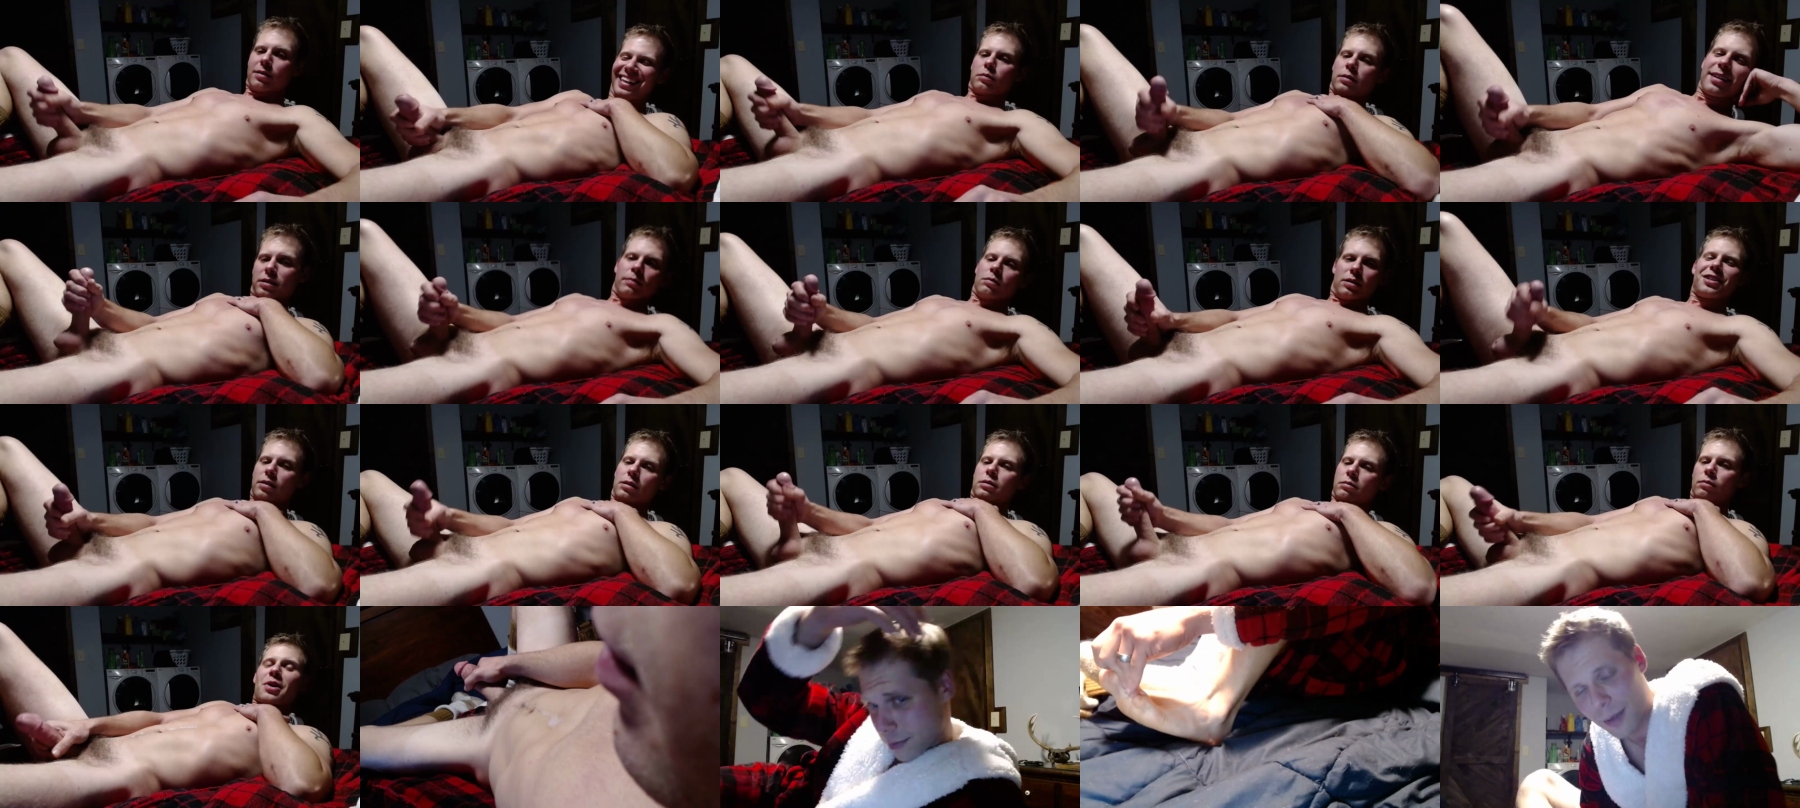 Lancehardin  04-11-2021 Male Webcam